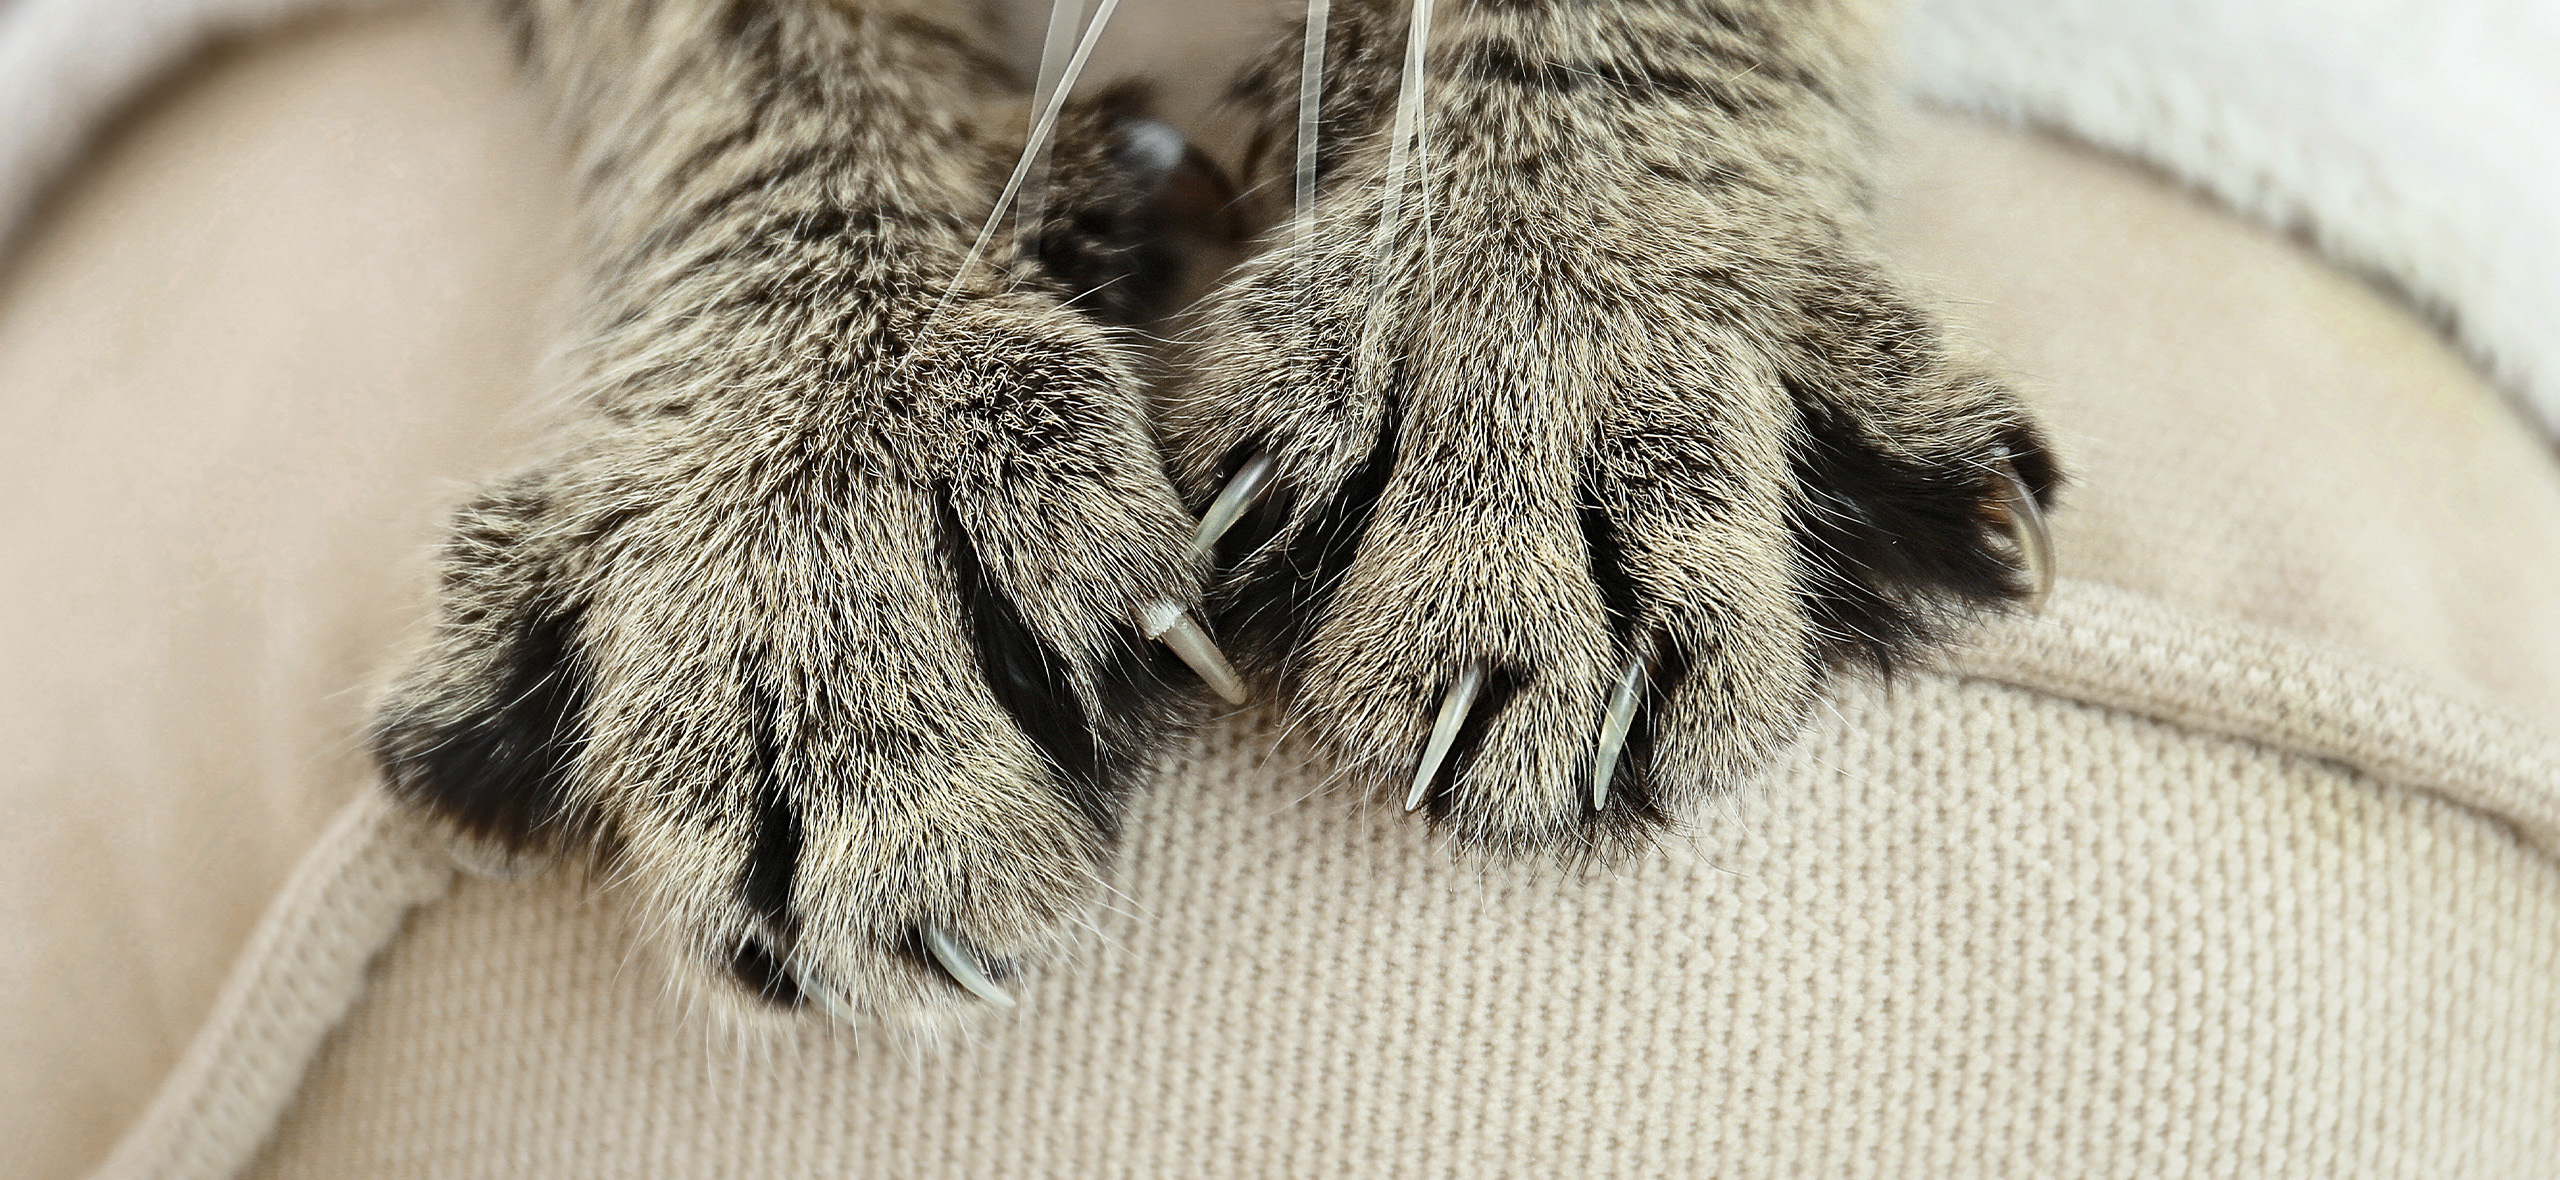 Кошка дерет мебель: что делать и как отучить царапать и точить когти